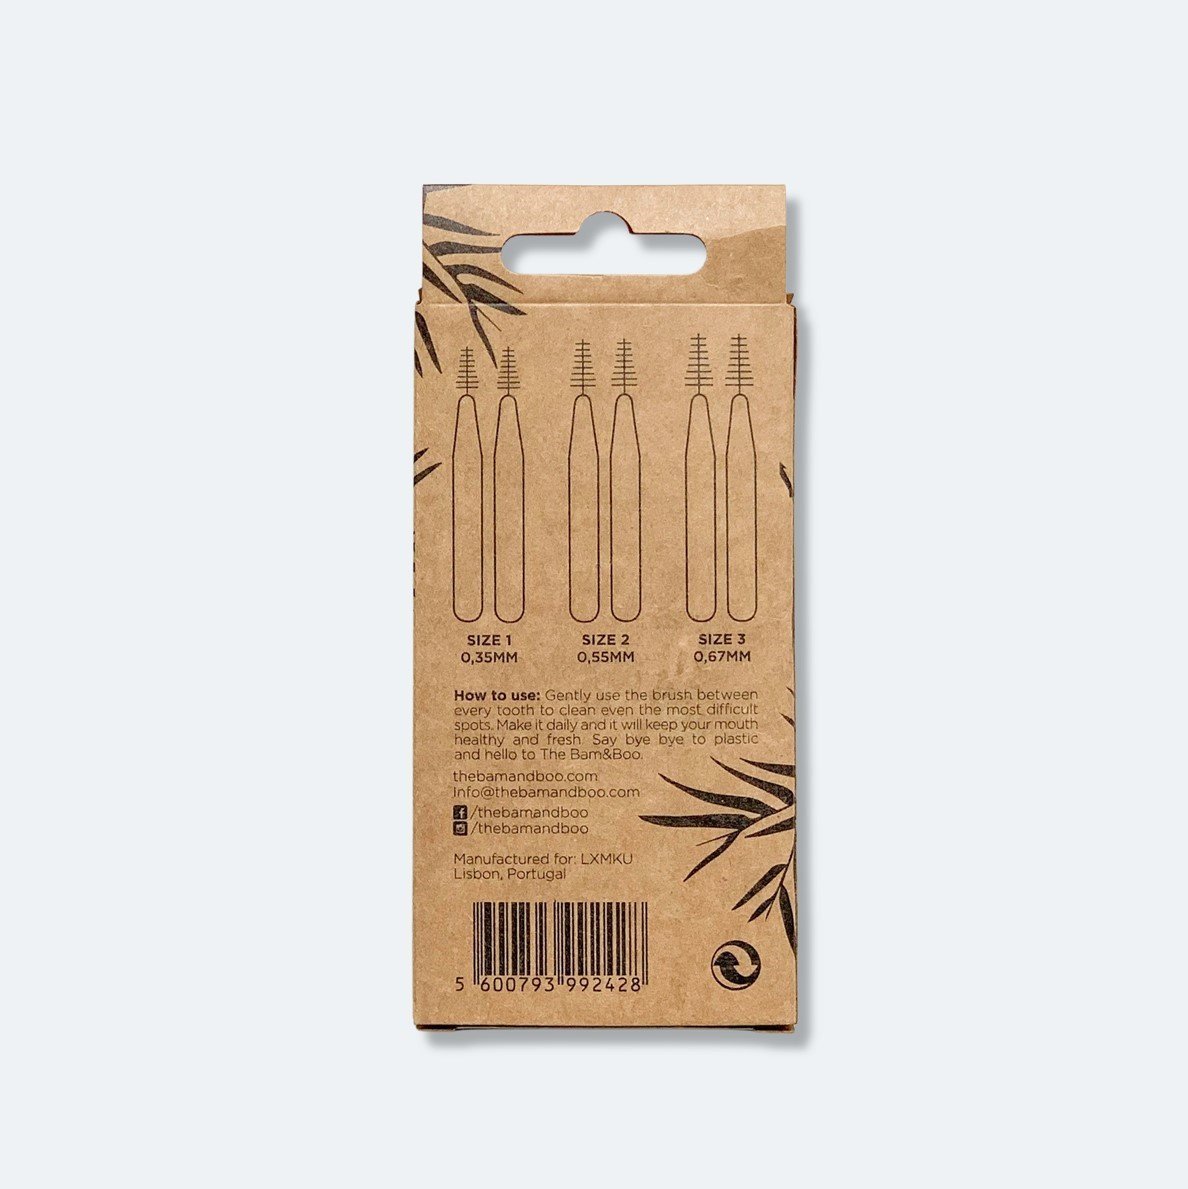 The Bam&Boo Cepillos interdentales - Bambú Toothbrush Bam&Boo  - Eco-friendly, vegan, cuidado bucal y personal sostenible